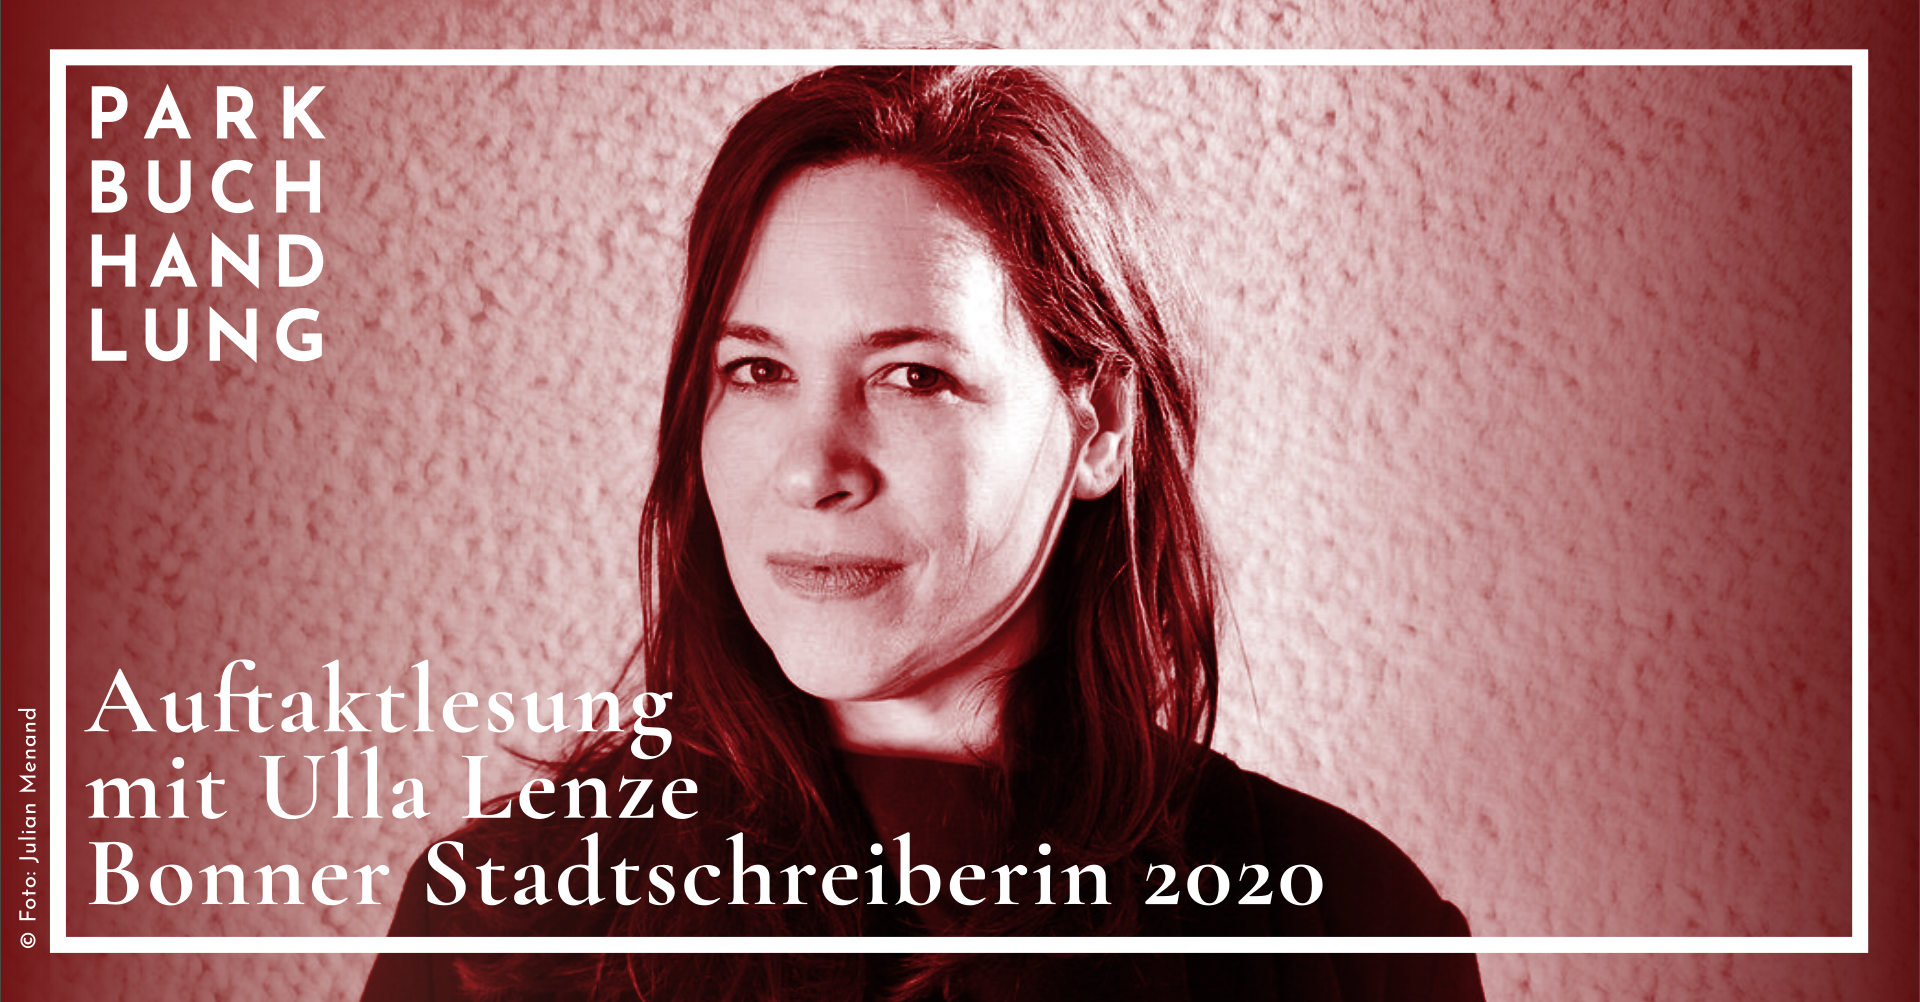 Ulla Lenze – Auftaktlesung der Bonner Stadtschreiberin Parkbuchhandlung Buchhandlung Bonn Bad Godesberg